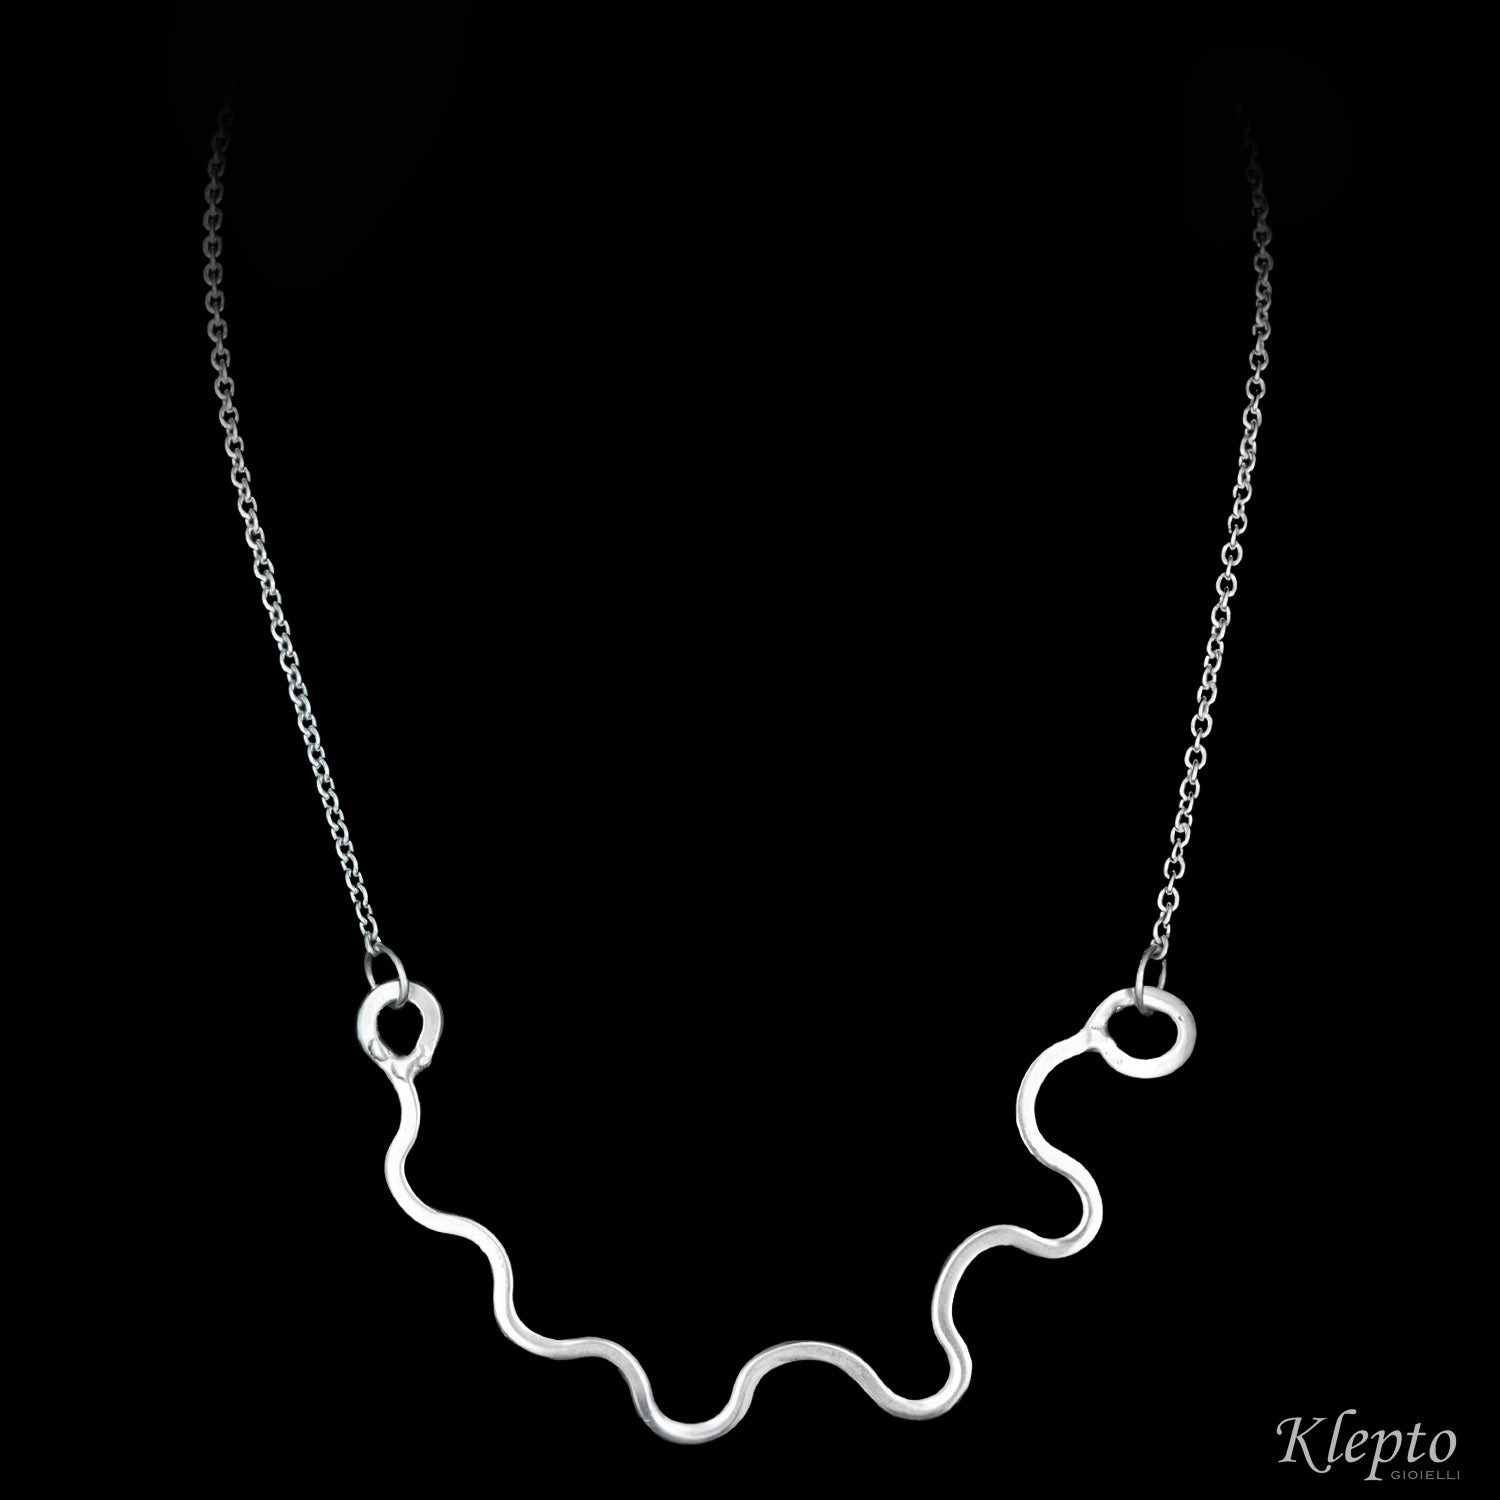 Silnova® silver necklace with wavy wire